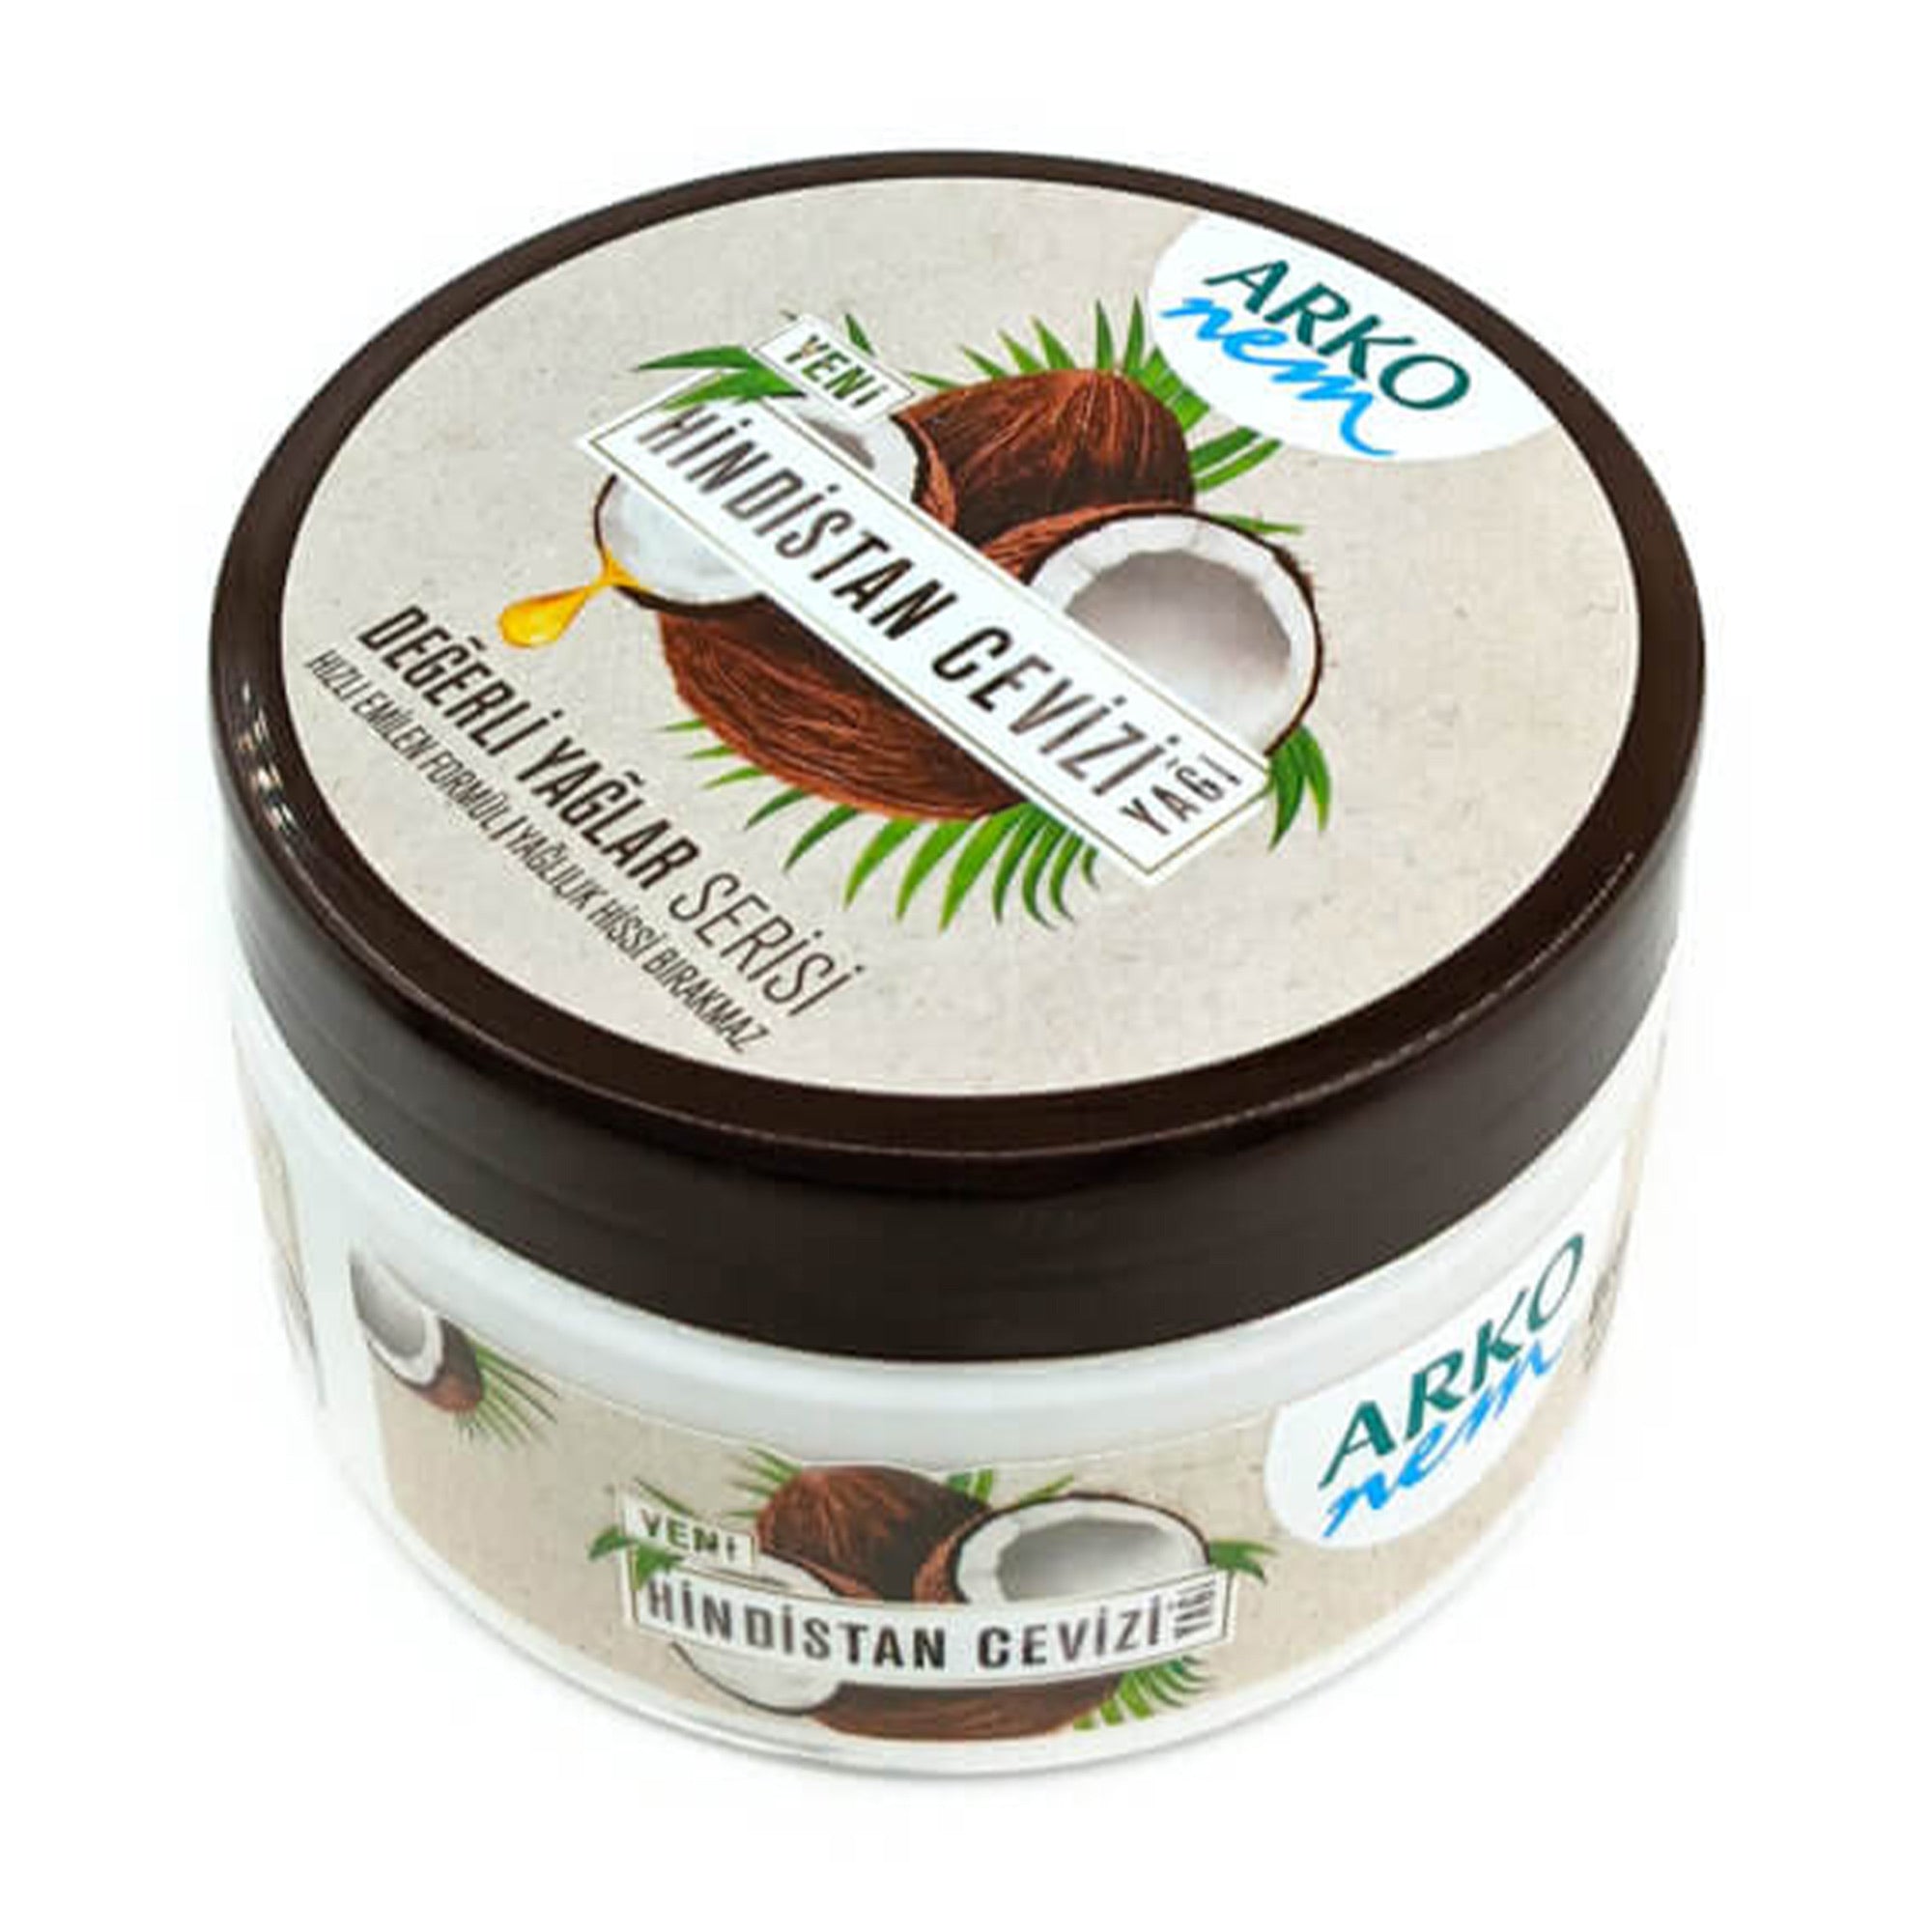 Arko - Nem Coconut Oil Cream 250ml